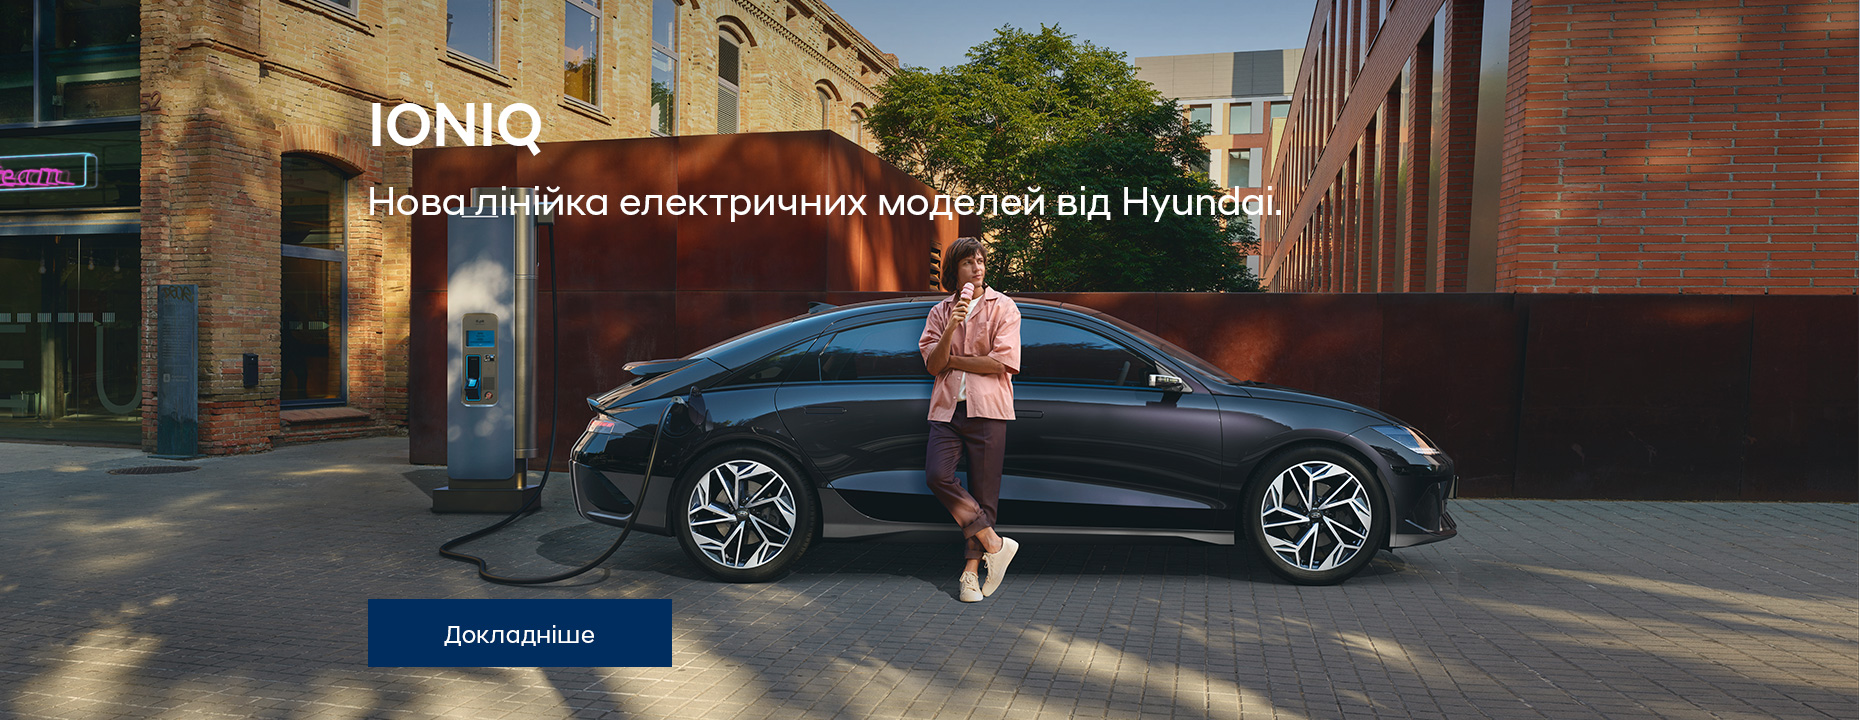 Автомобілі Hyundai м. Полтава | Купити новий Хюндай | Хюндай Центр Полтава - фото 32